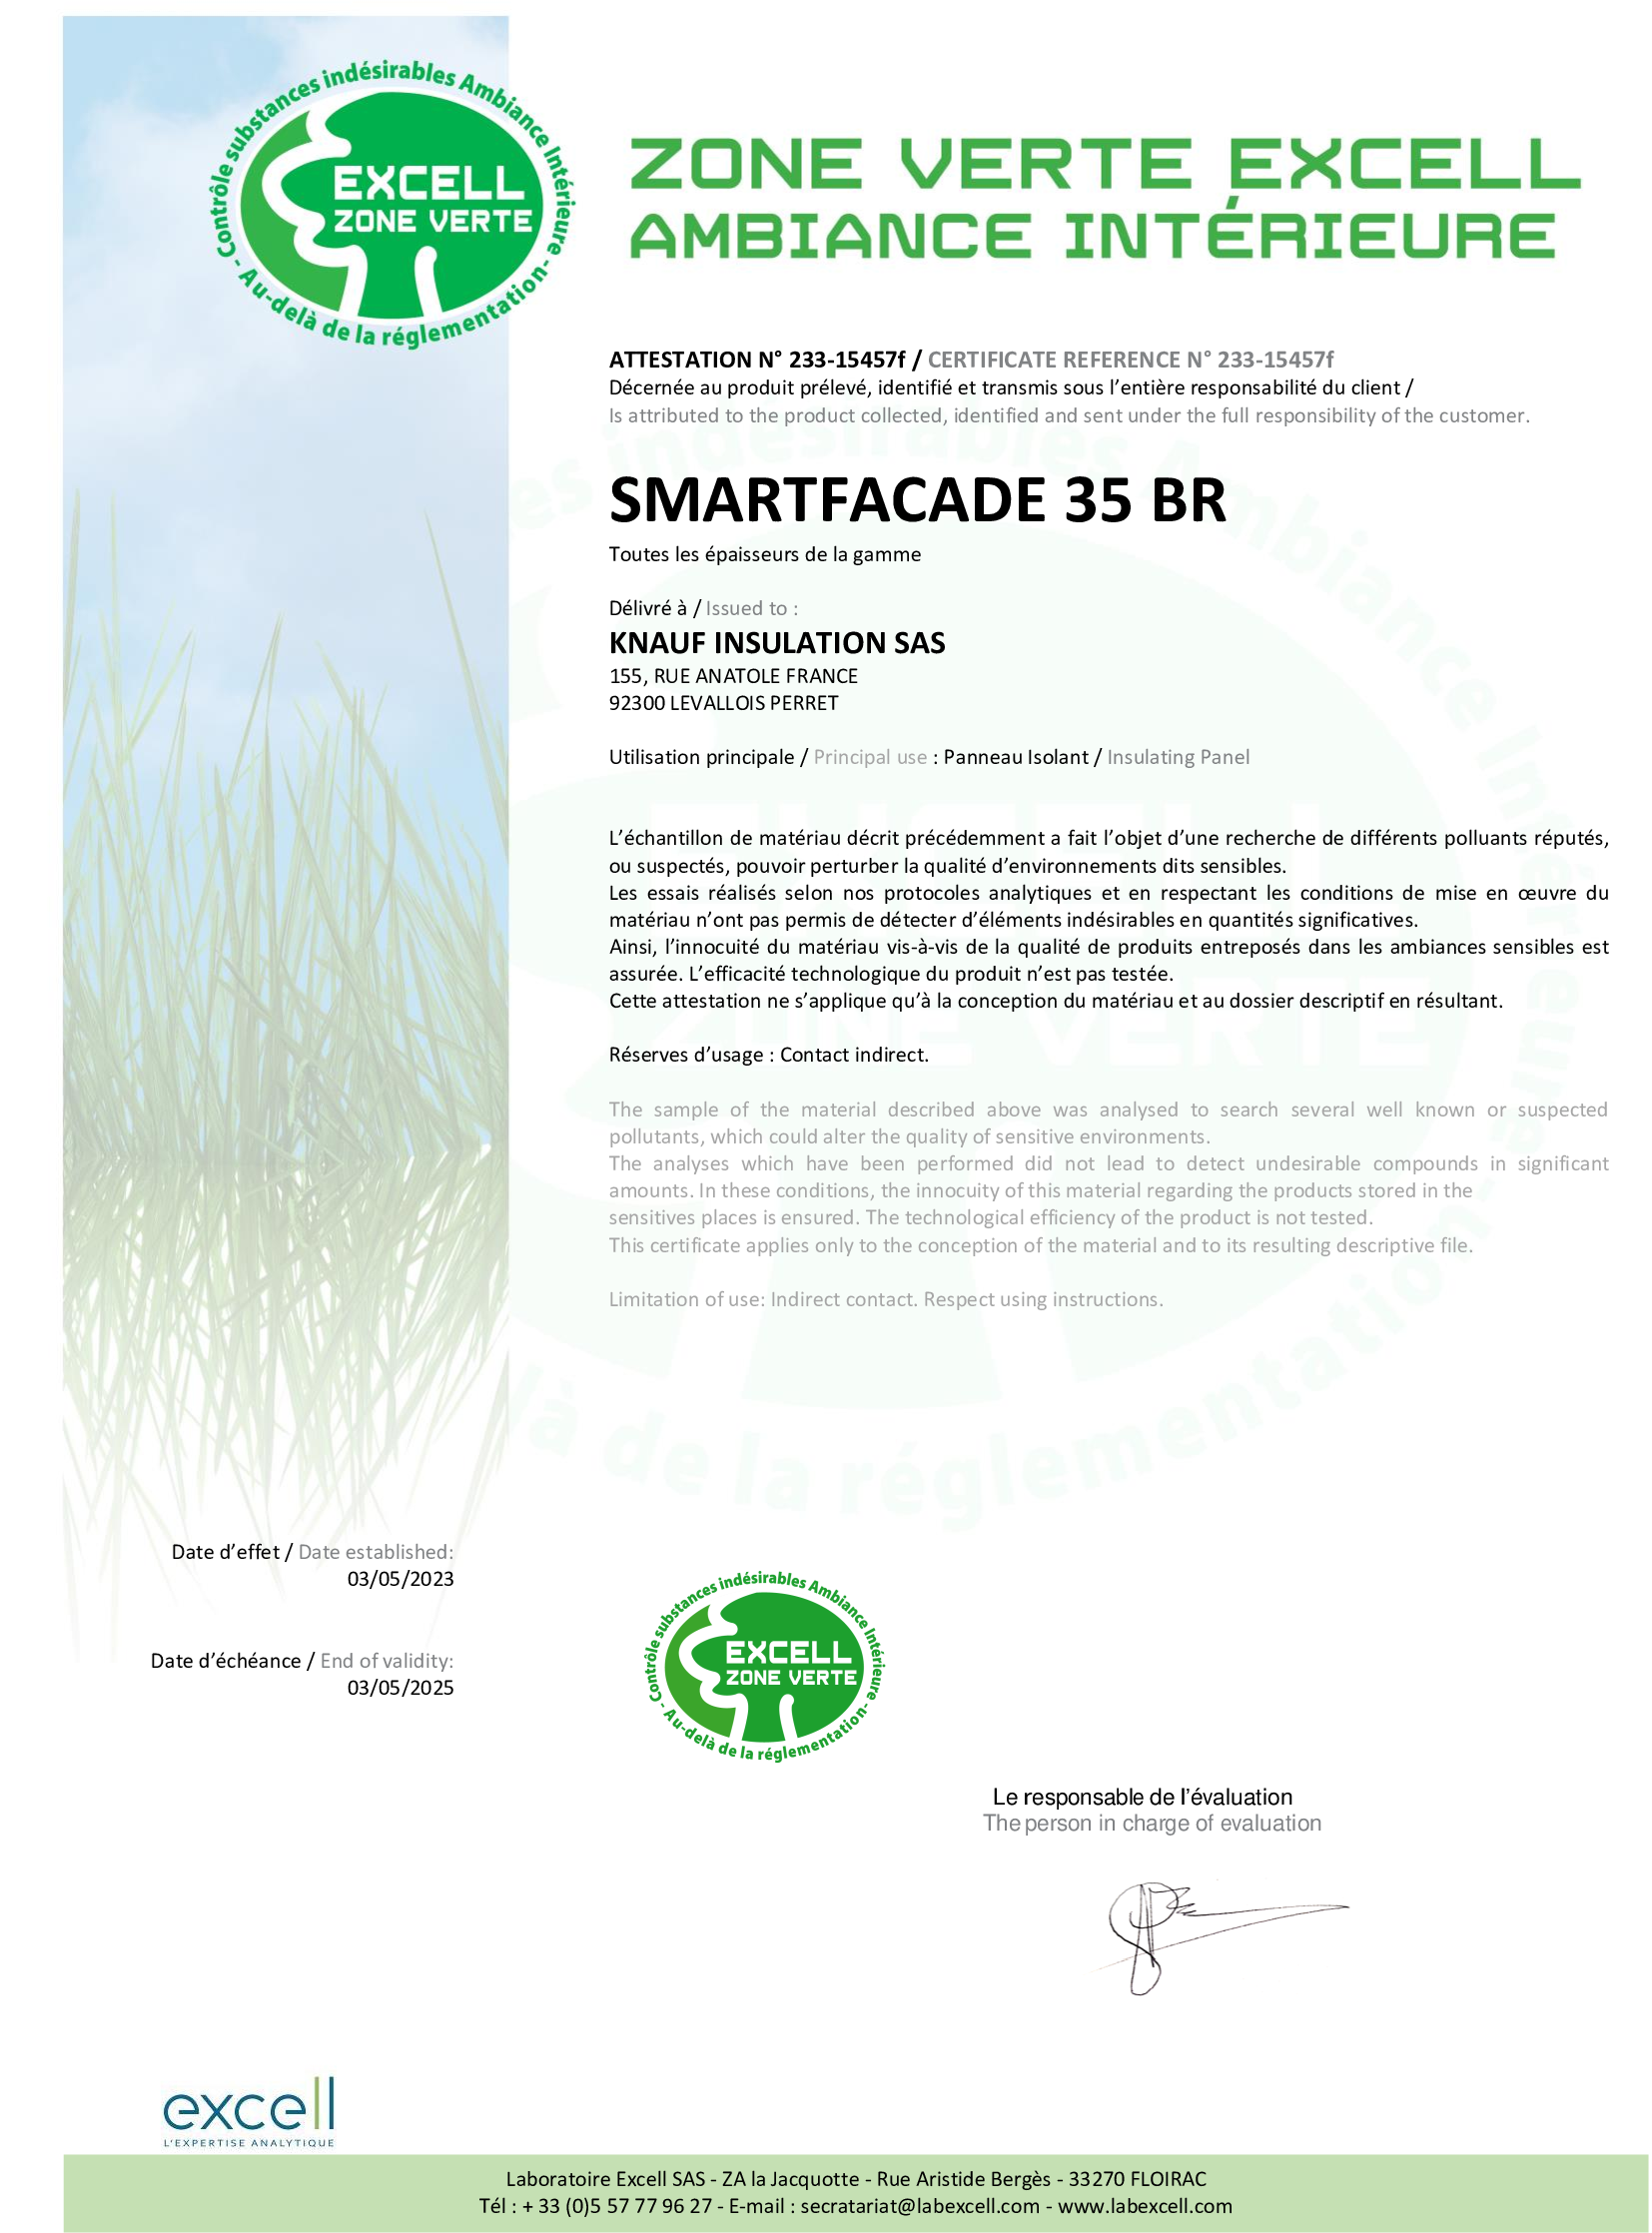 Label Excell - Smartfacade 35 BR